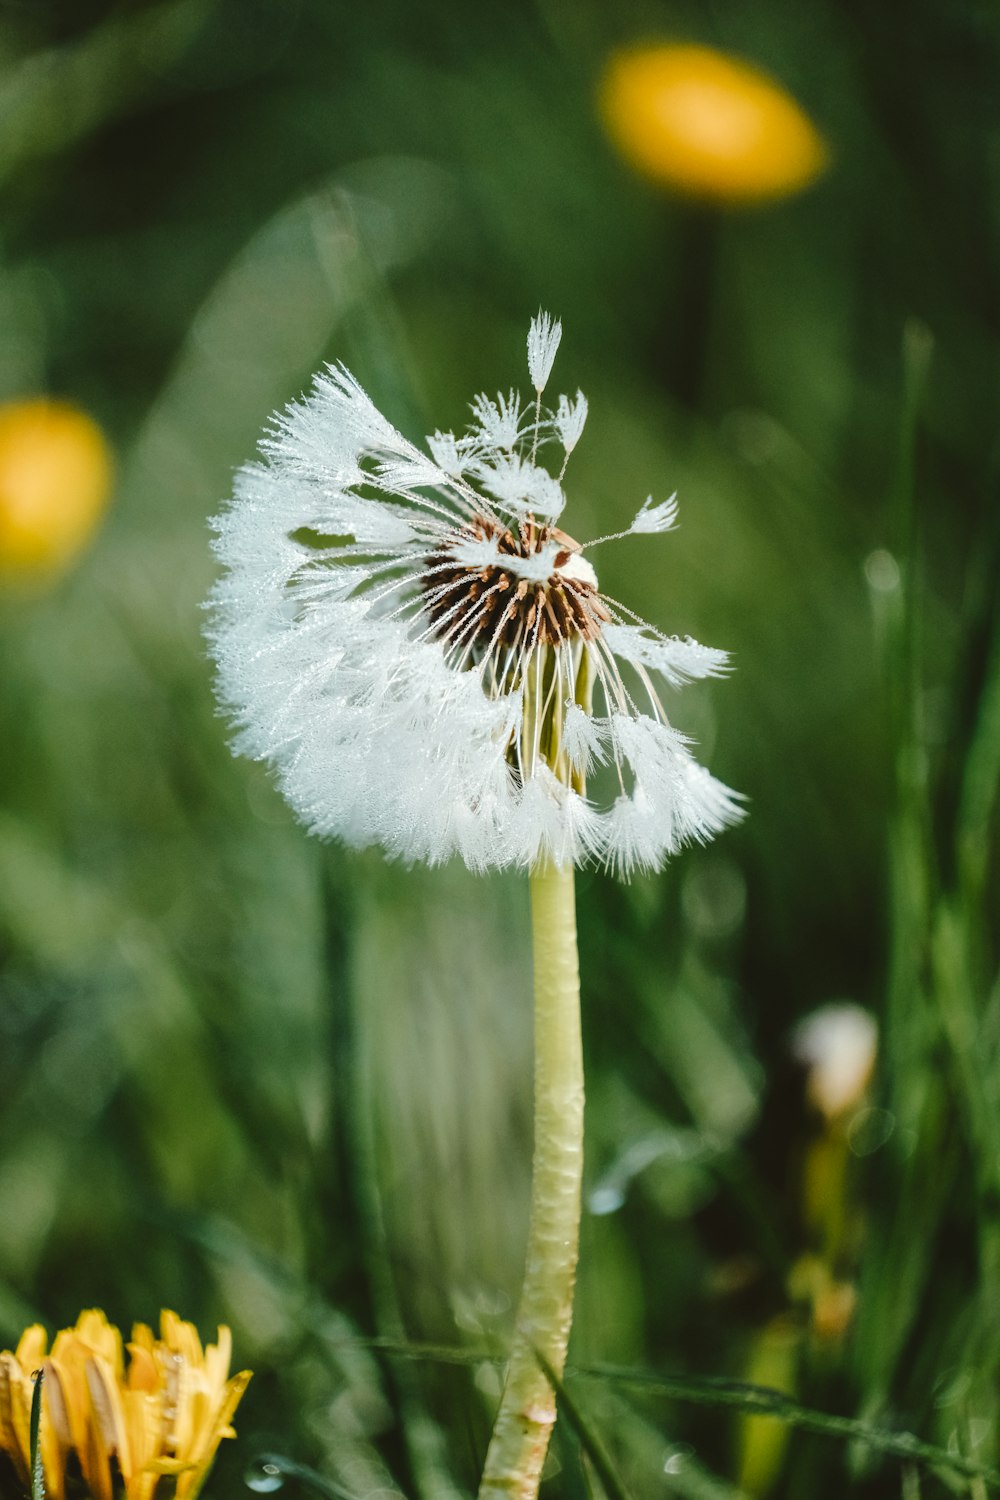 a dandelion in a field of green grass